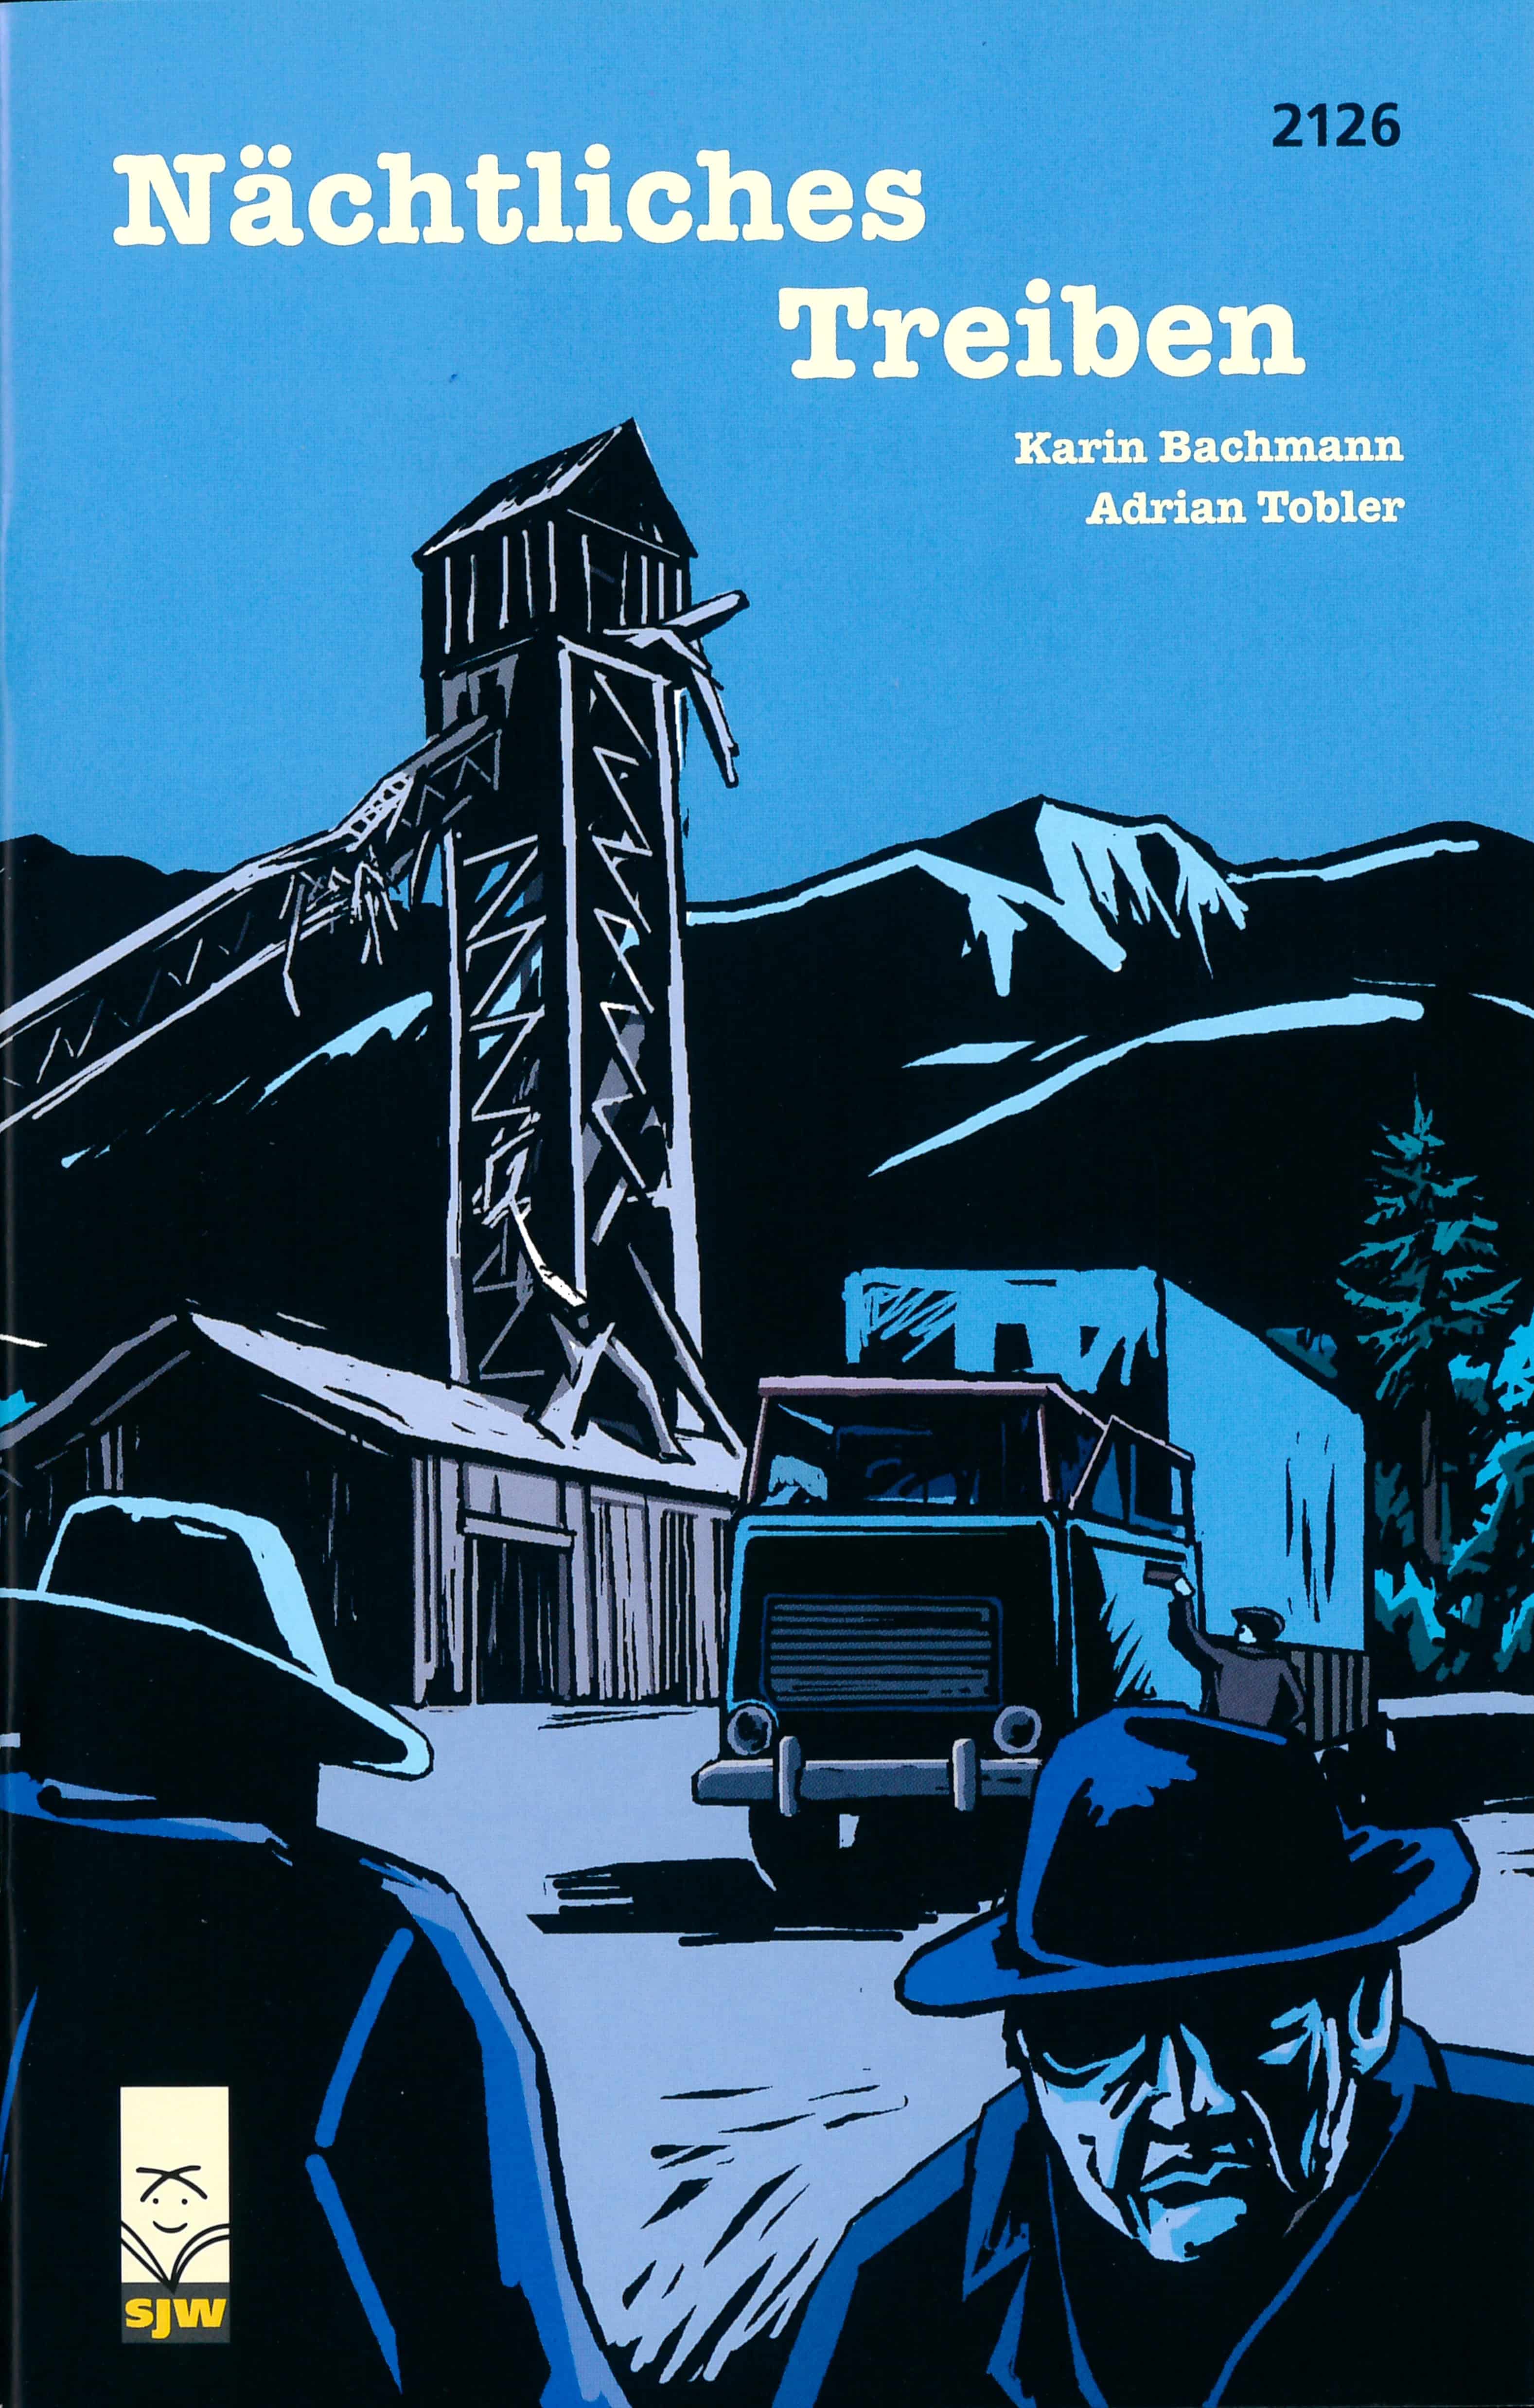 Naechtliches Treiben, ein Jugendbuch von Karin Bachmann, Illustration von Adrian Tobler, SJW Verlag, Umweltkrimi